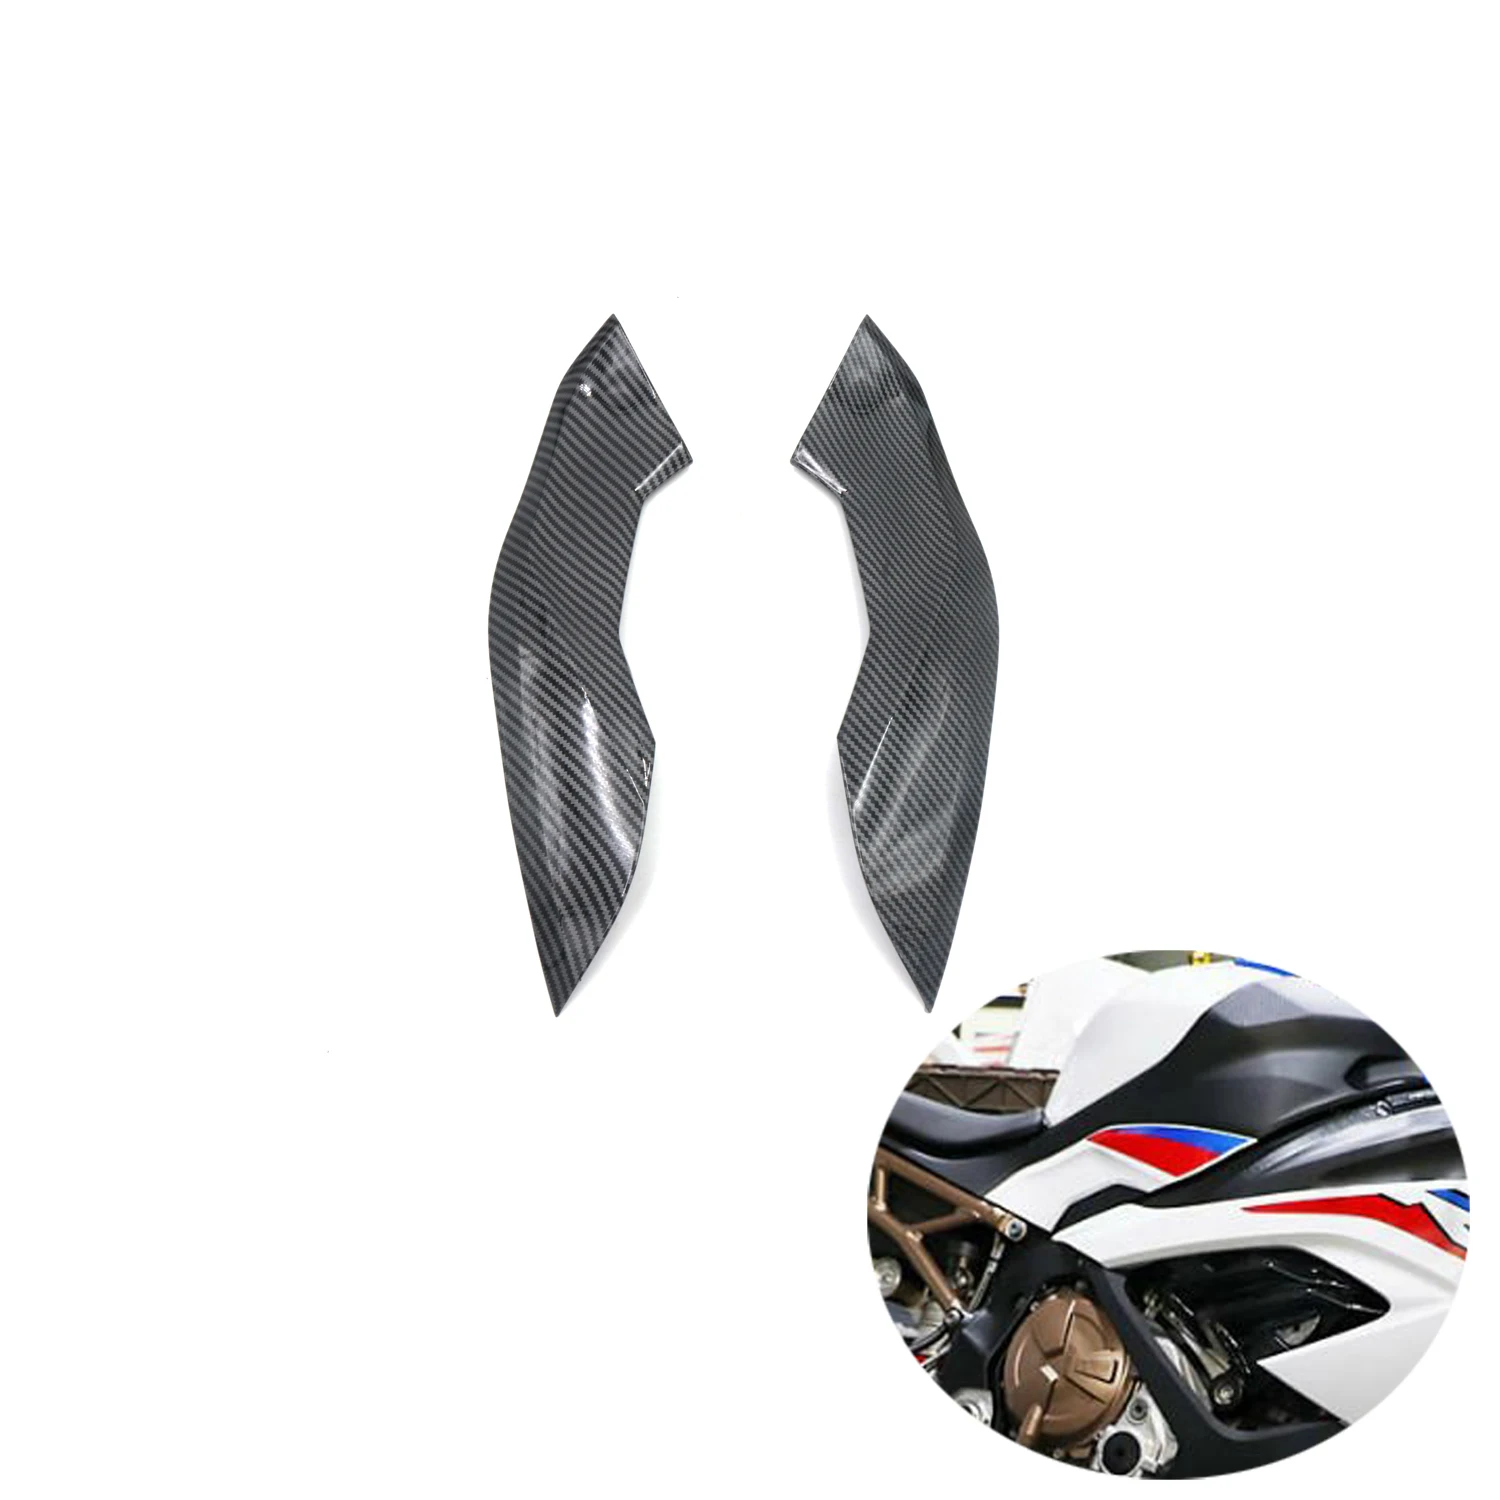 

Для BMW S1000RR S 1000 RR 2019 2020 мотоциклетный топливный бак боковые маленькие крышки ABS инъекция обтекатель цвет углеродного волокна